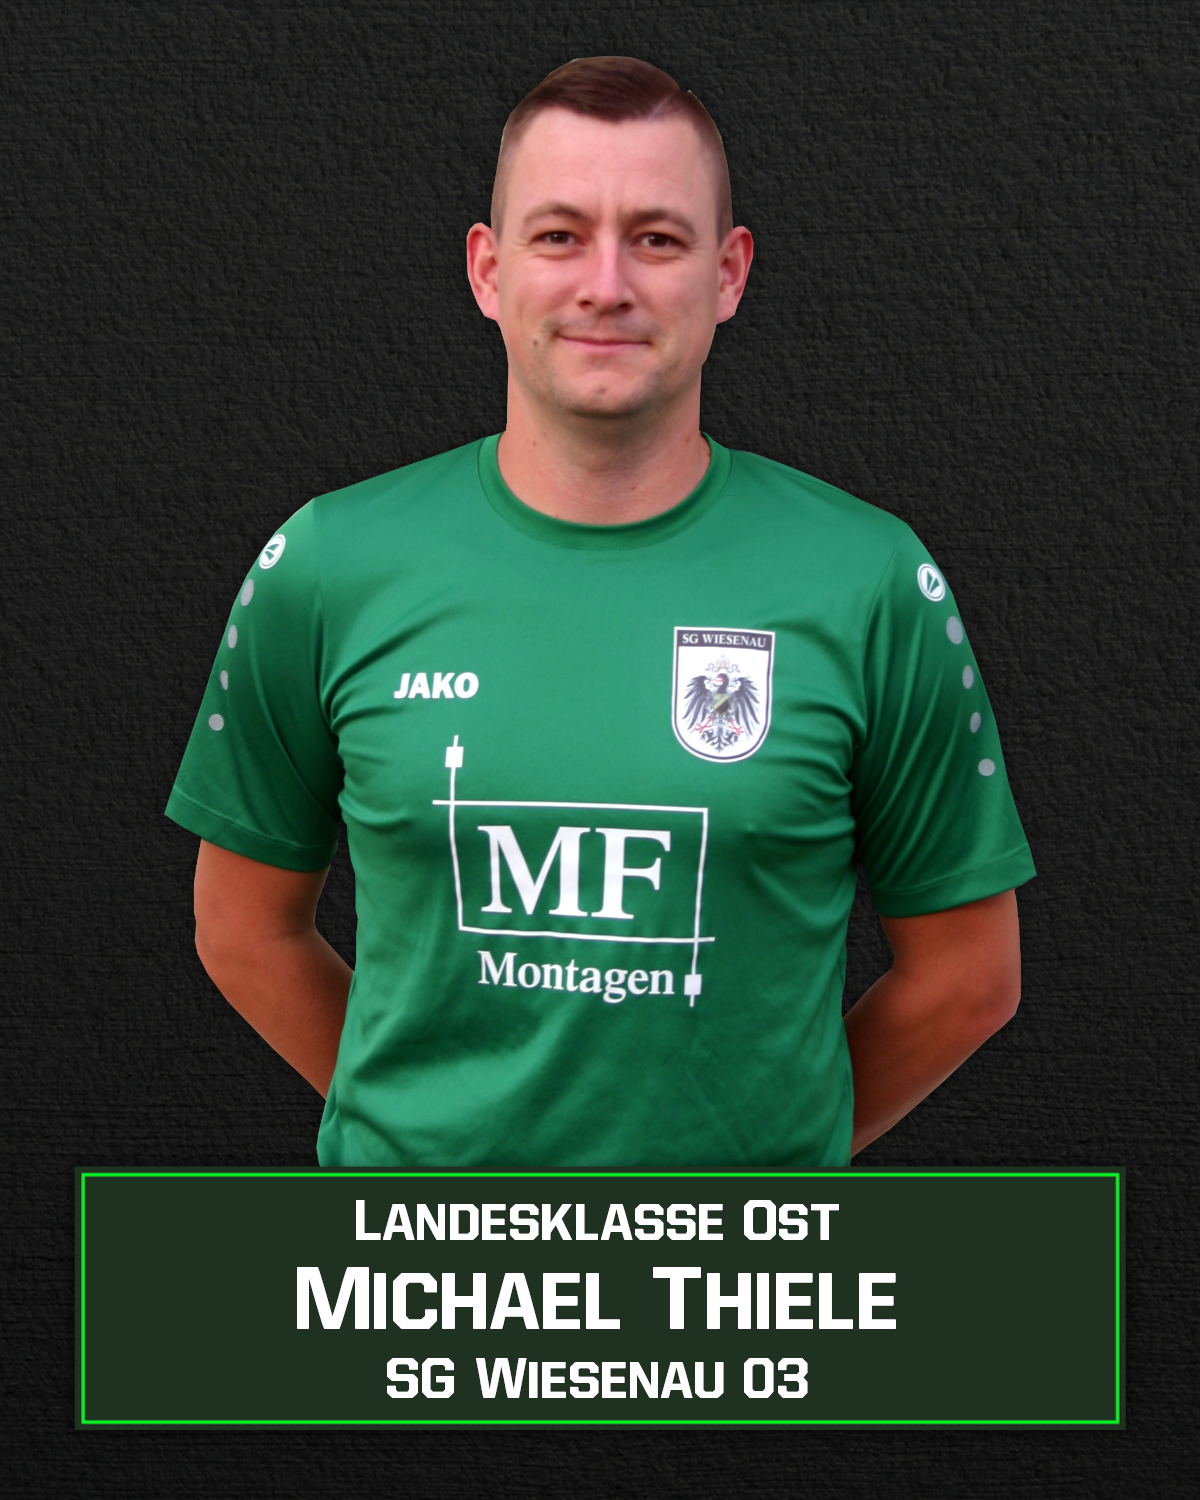 Michael Thiele